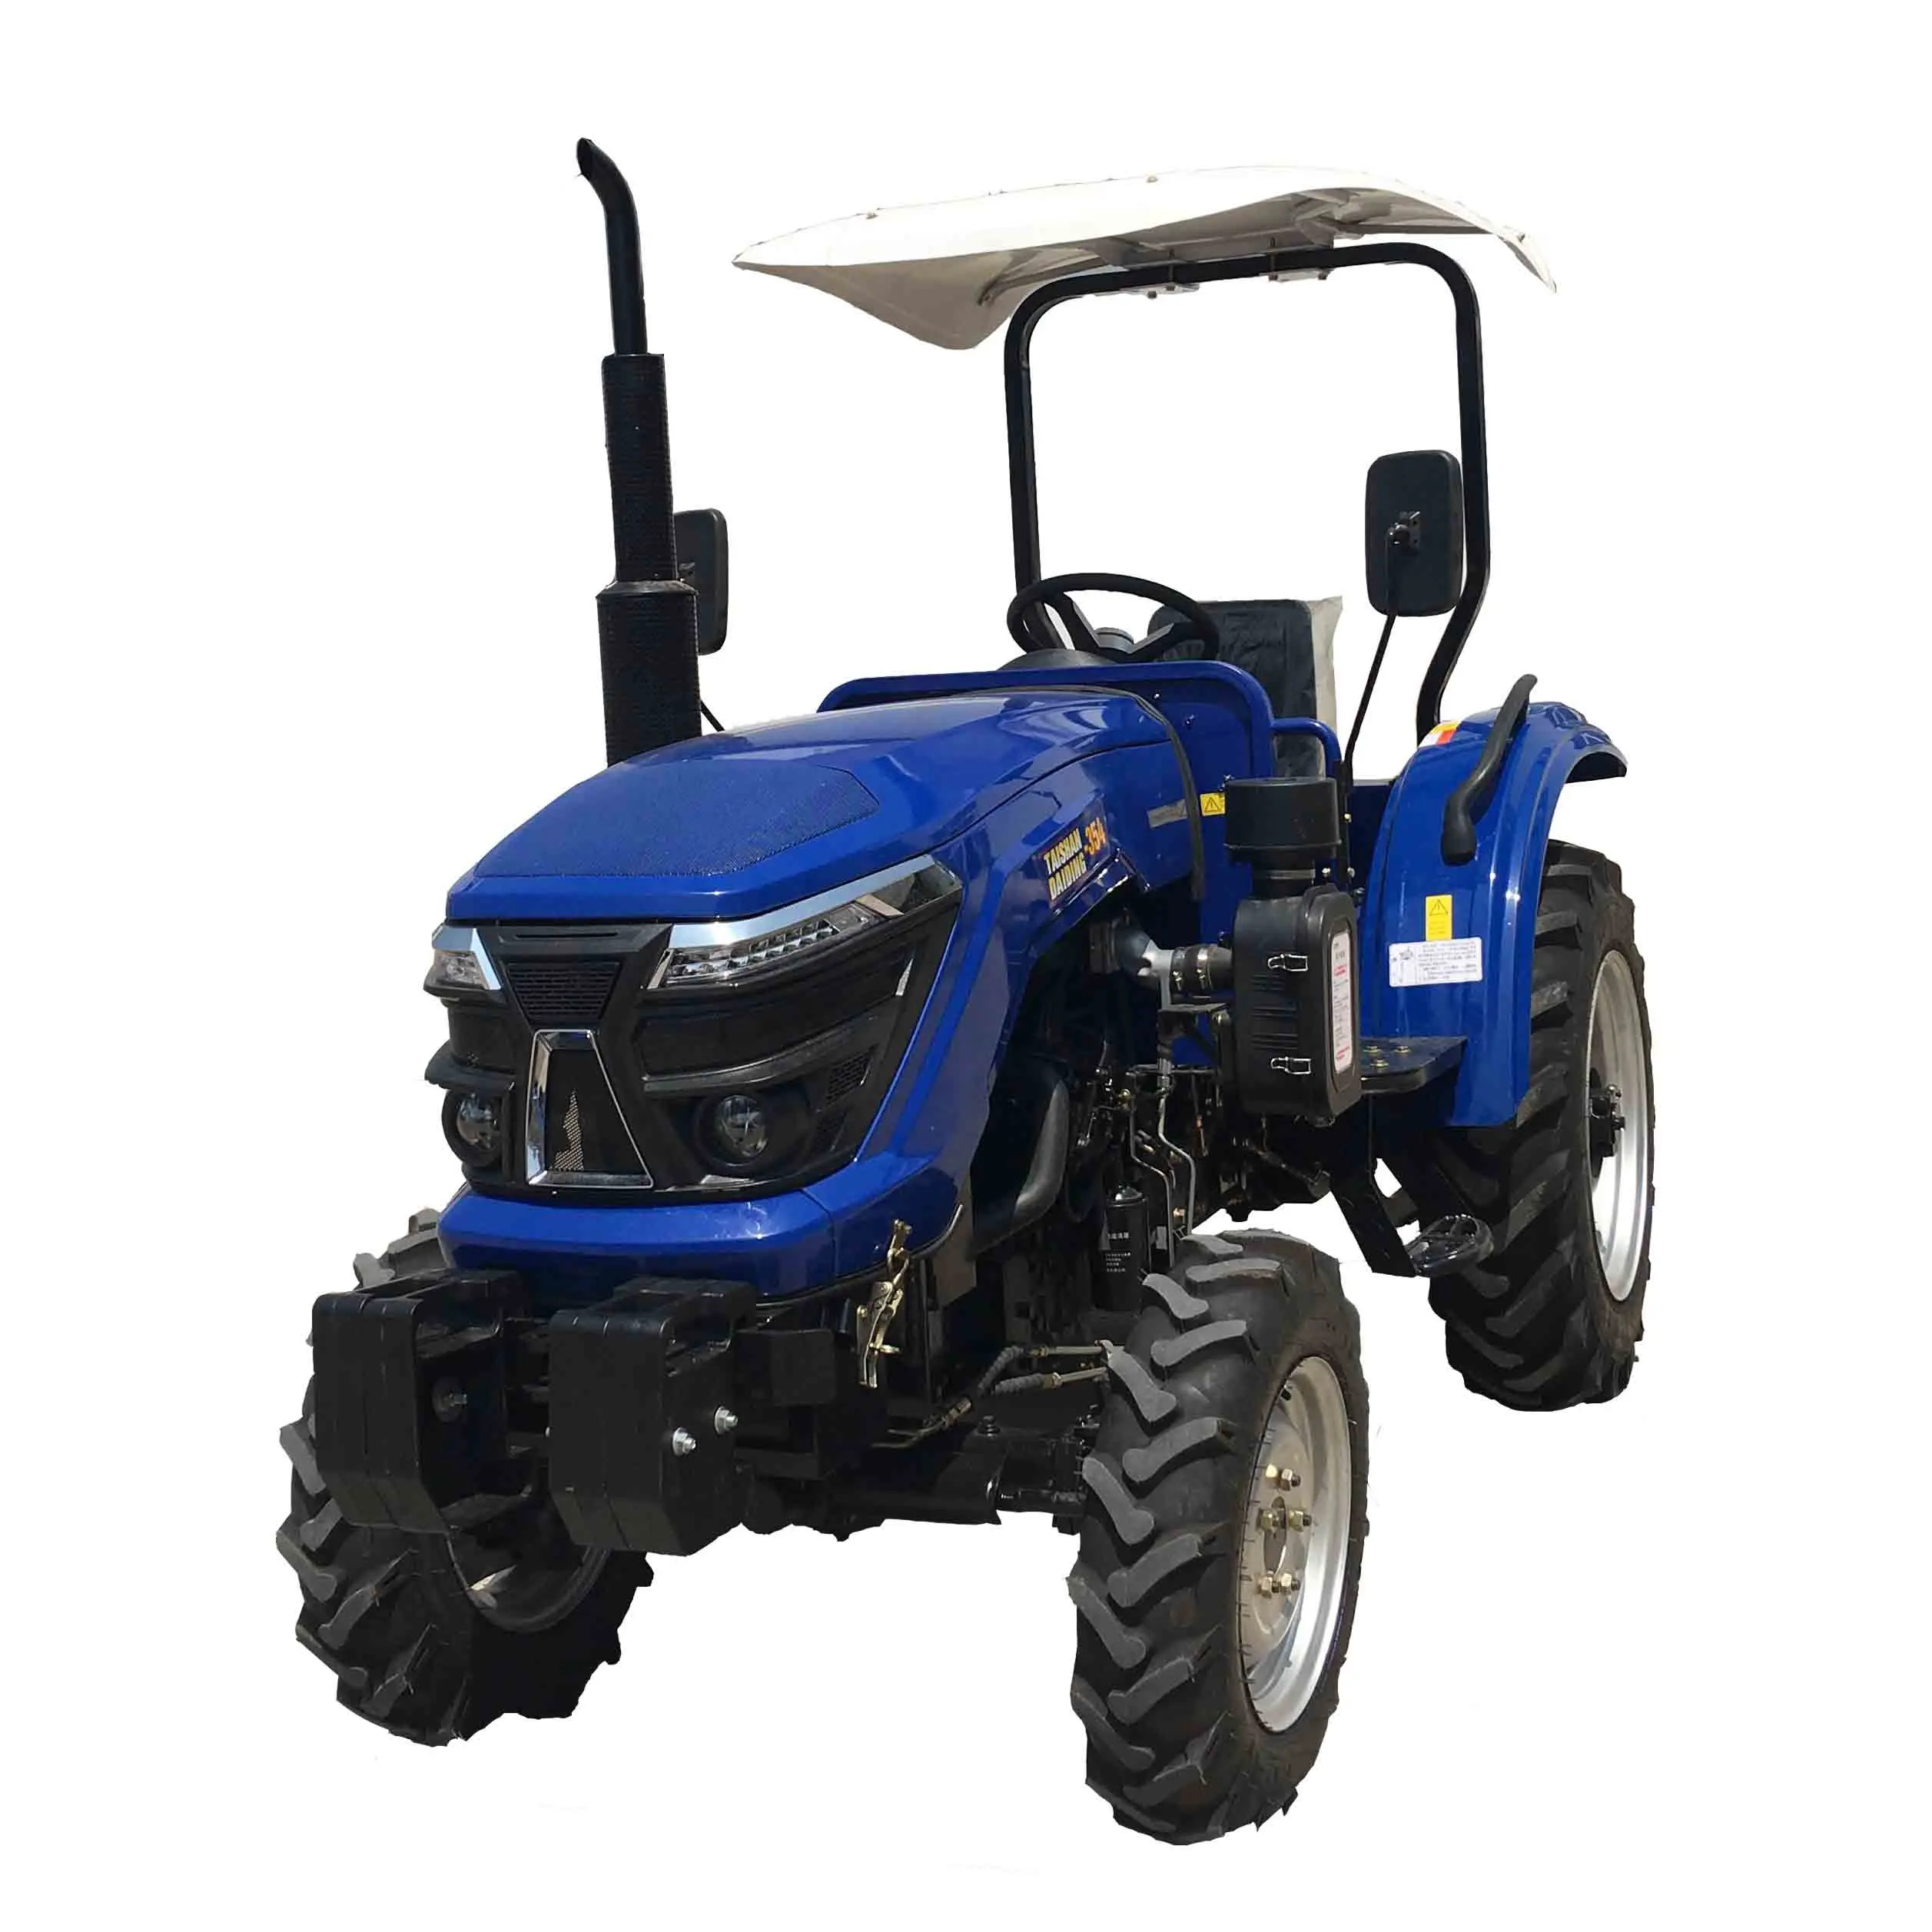 Acheter un nouveau tracteur diesel 35 CV Importer tous les types de tracteurs agricoles 4x4 pour la ferme en Indonésie